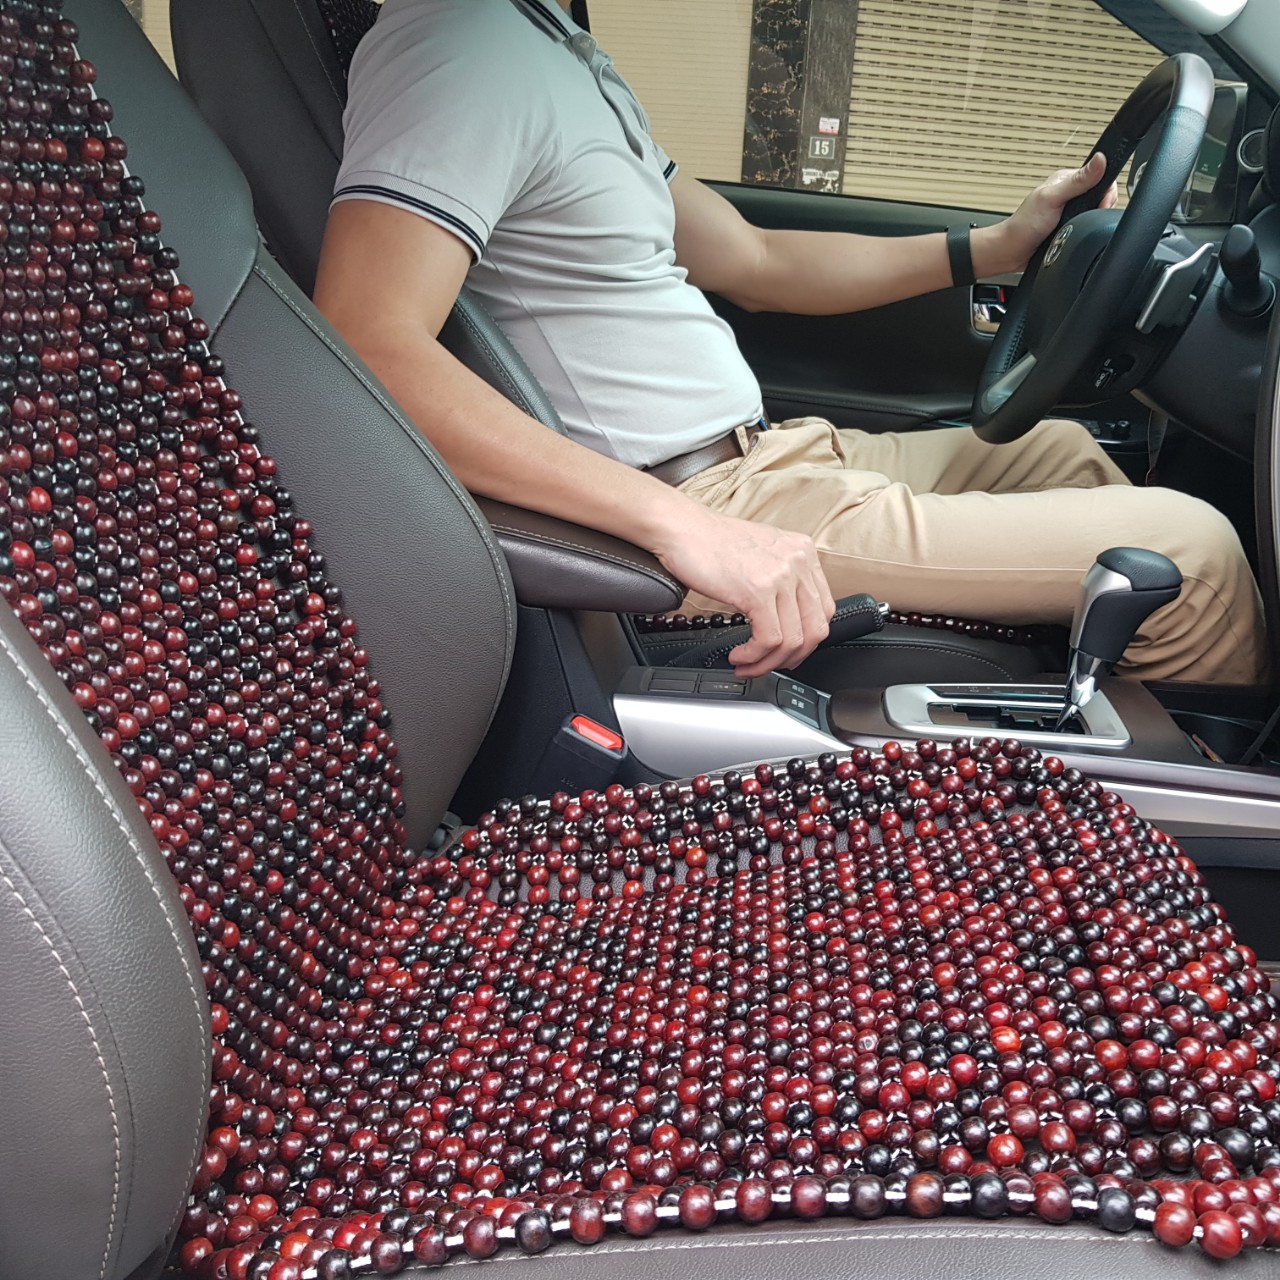 Đệm lót ghế ô tô hạt gỗ Cẩm Lai 100% tự nhiên tựa lưng massage trên ô tô - Dạng Cài Đàn - Kích thước: 1,20x0,45m - Trọng lượng: 2,7Kg - Mã: CL-D